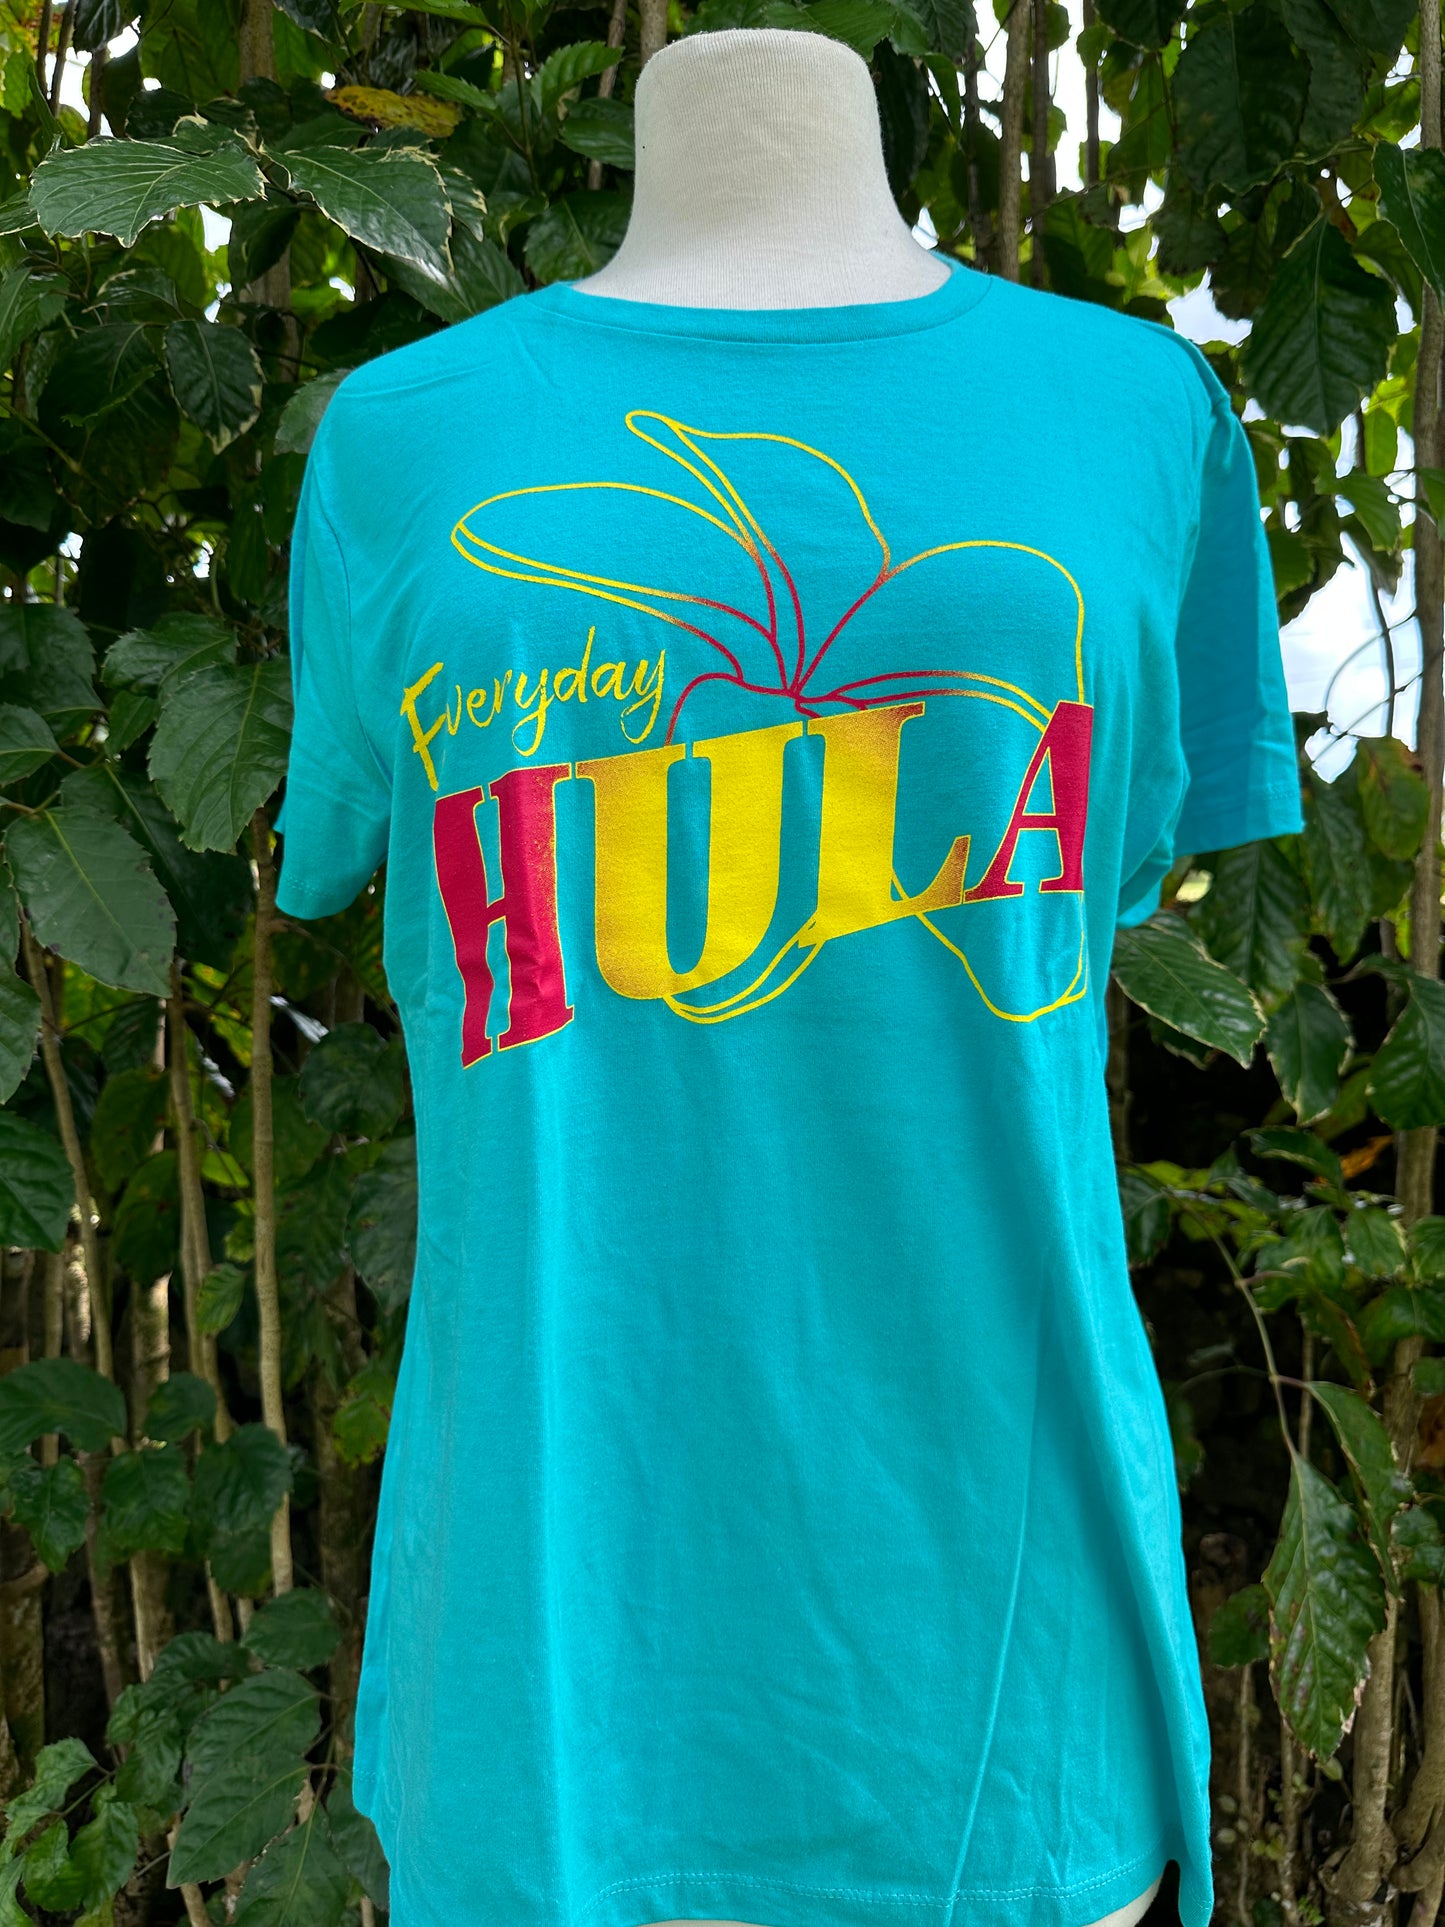 Everyday Hula - Tahiti Blue (Women's Cut)